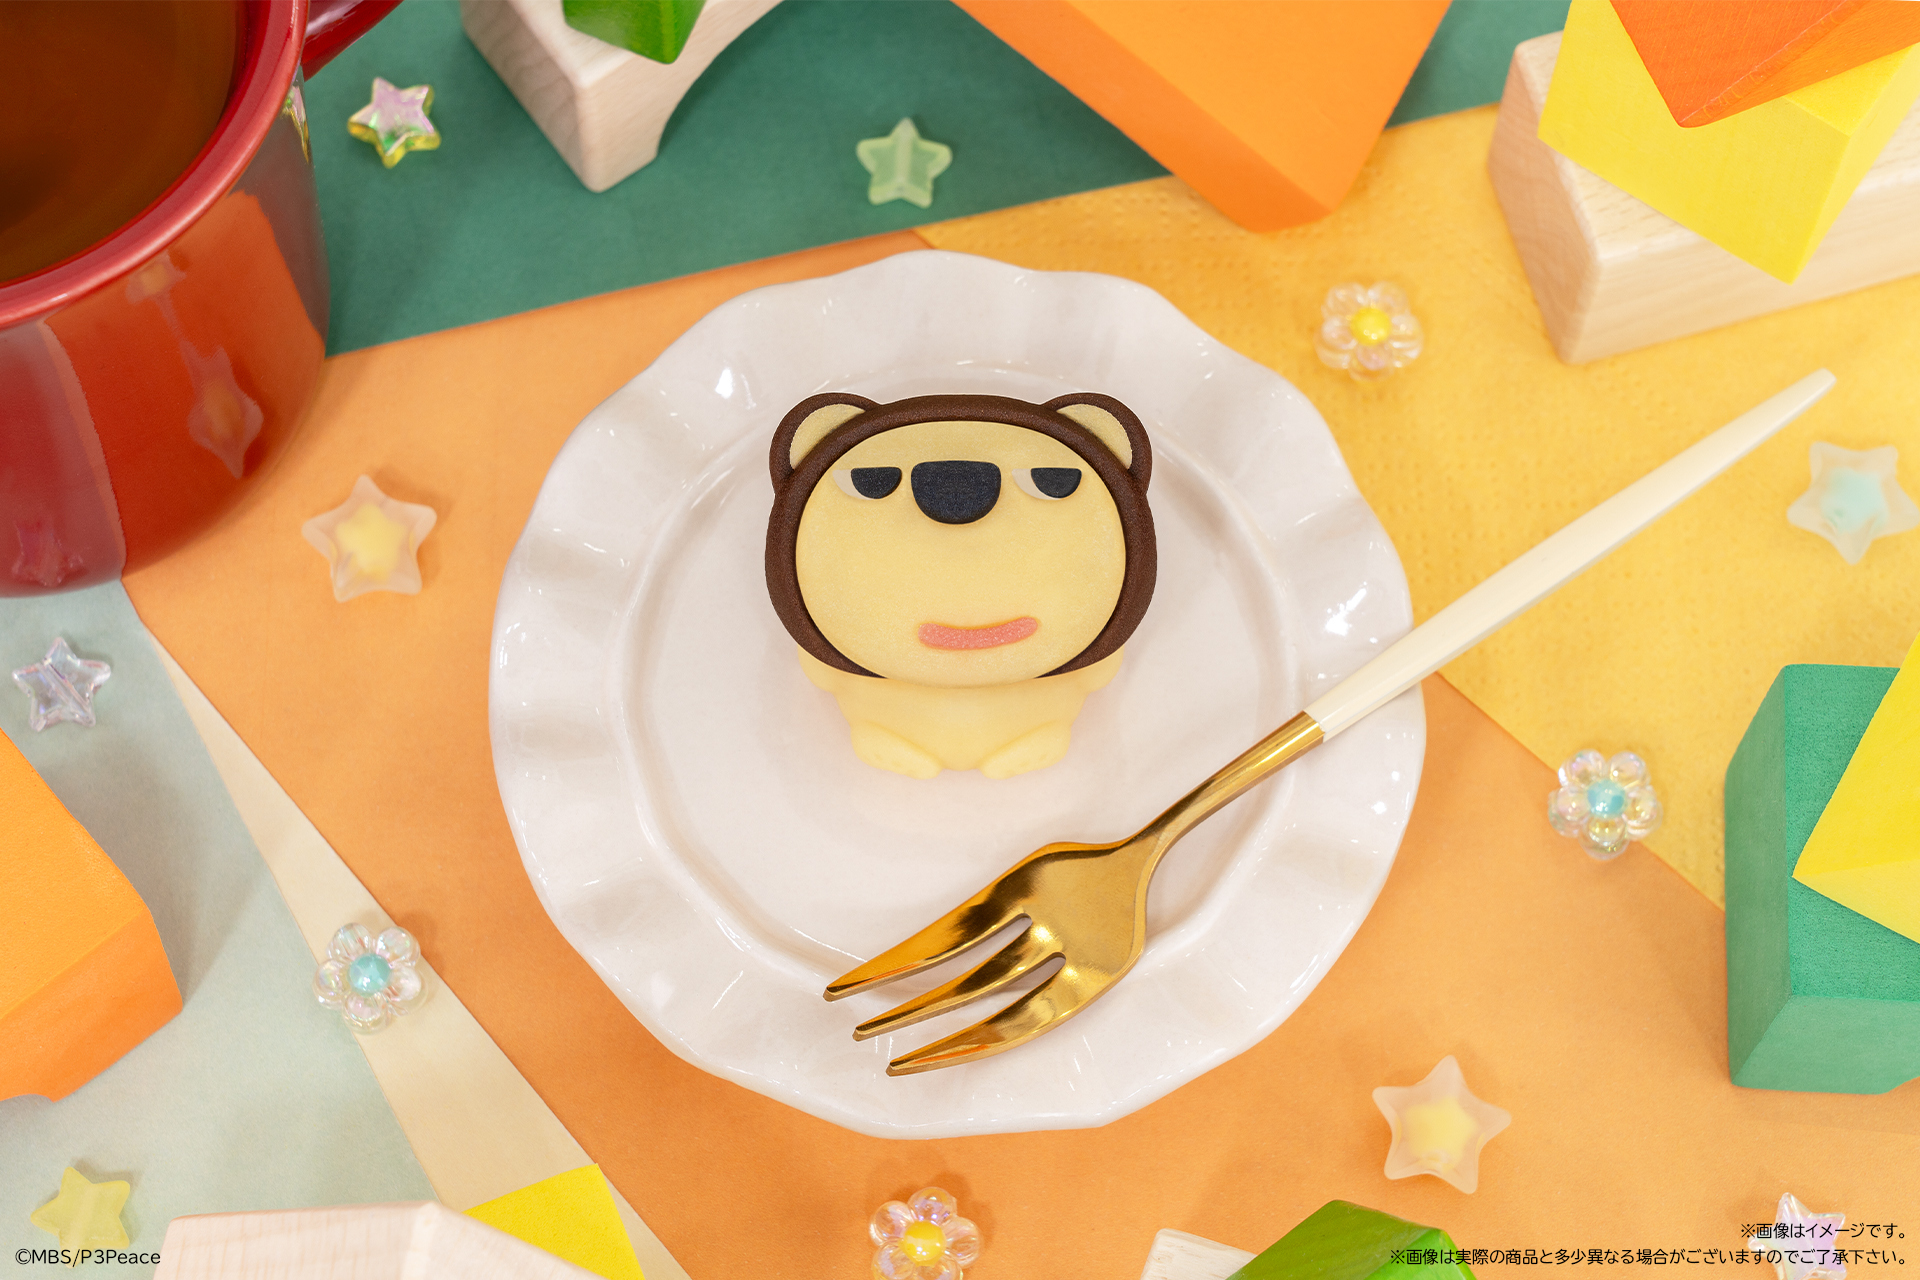 20周年を迎えたMBS毎日放送のPRキャラクター
“らいよんチャン”が食べマスシリーズに初登場　
ほくそ笑んだ表情が何ともかわいくおいしい和菓子！